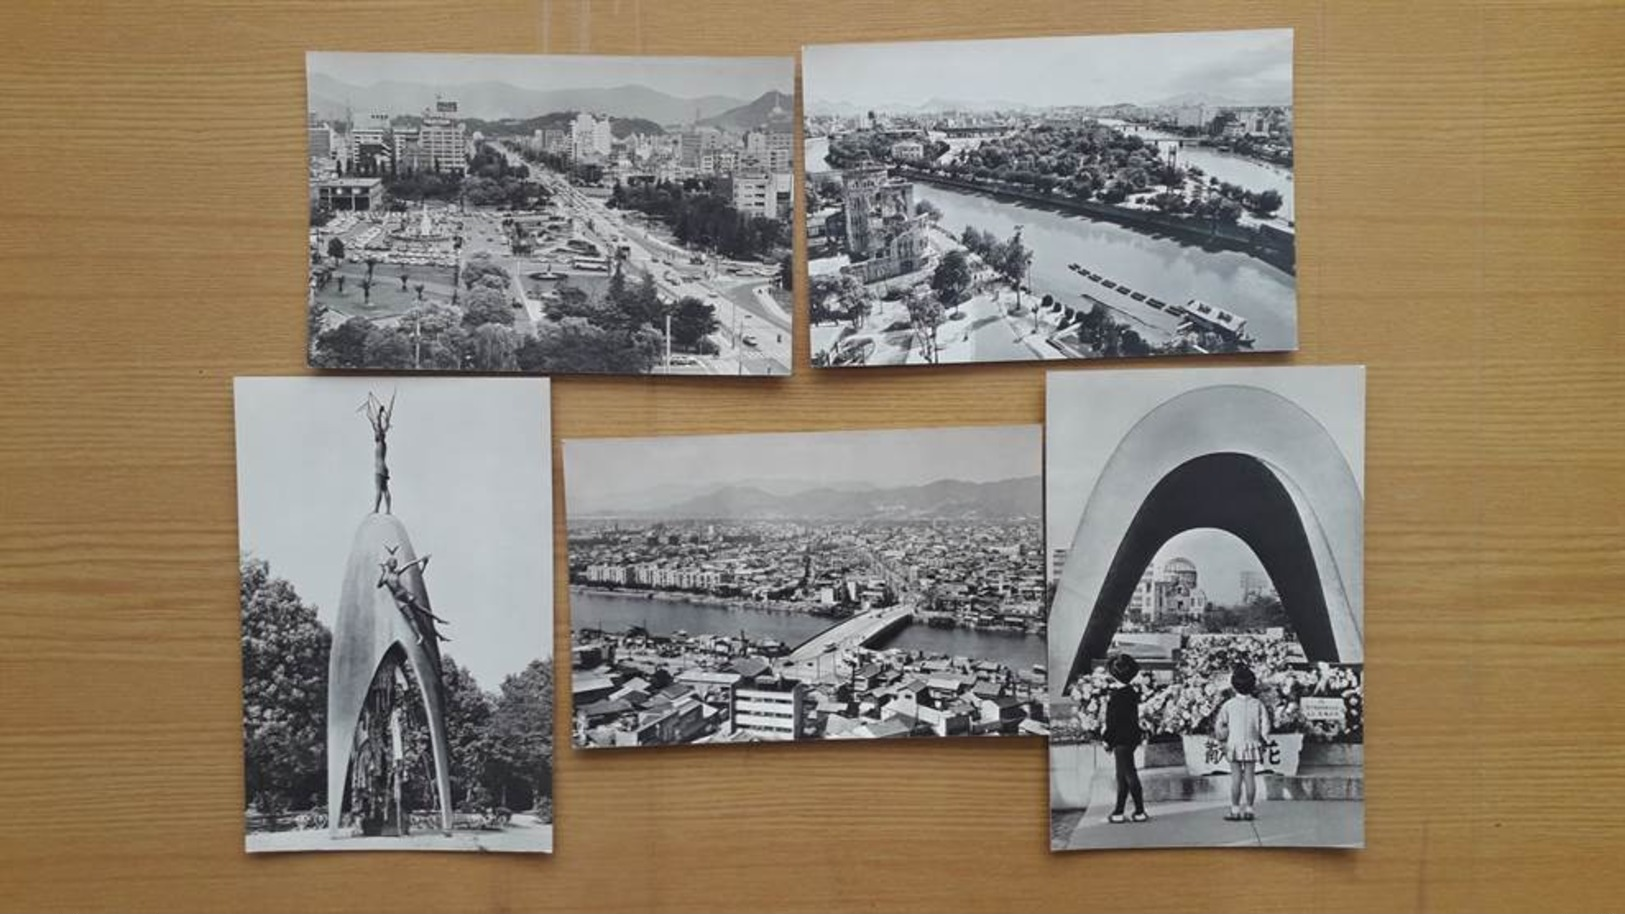 DÉFINIR UN MONUMENT JAPON HONSHU HIROSHIMA DE LA PLANÈTE PROPRE AUX VICTIMES DU PANORAMA DE LA VILLE - Hiroshima